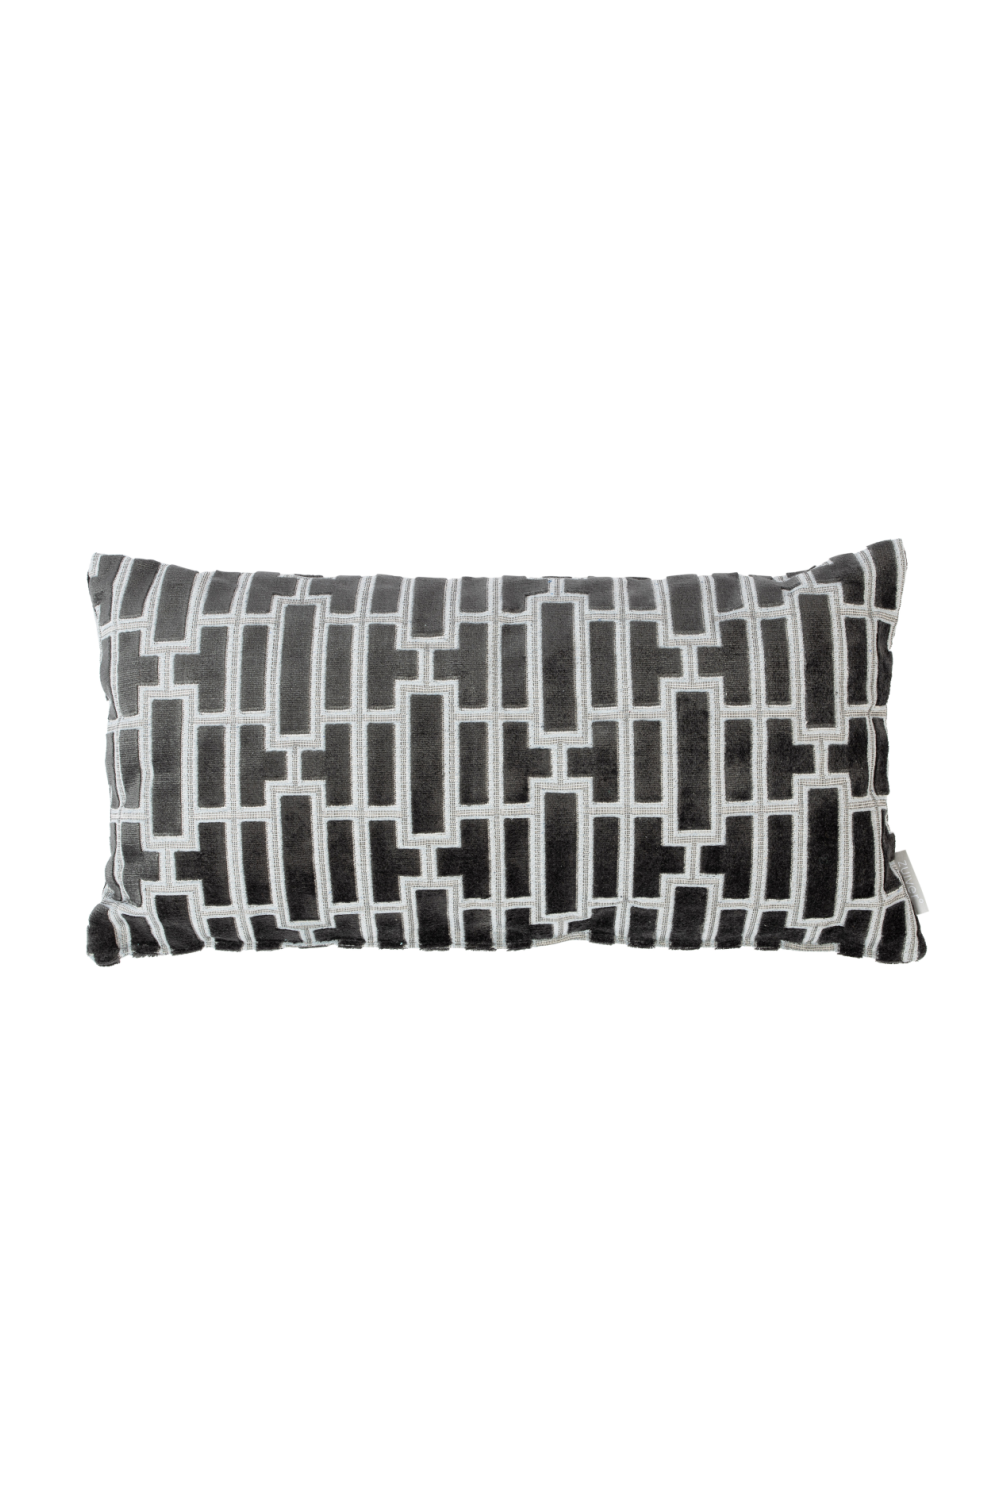 Black Contemporary Throw Pillows (2) | Zuiver Scape | Dutchfurniture.com